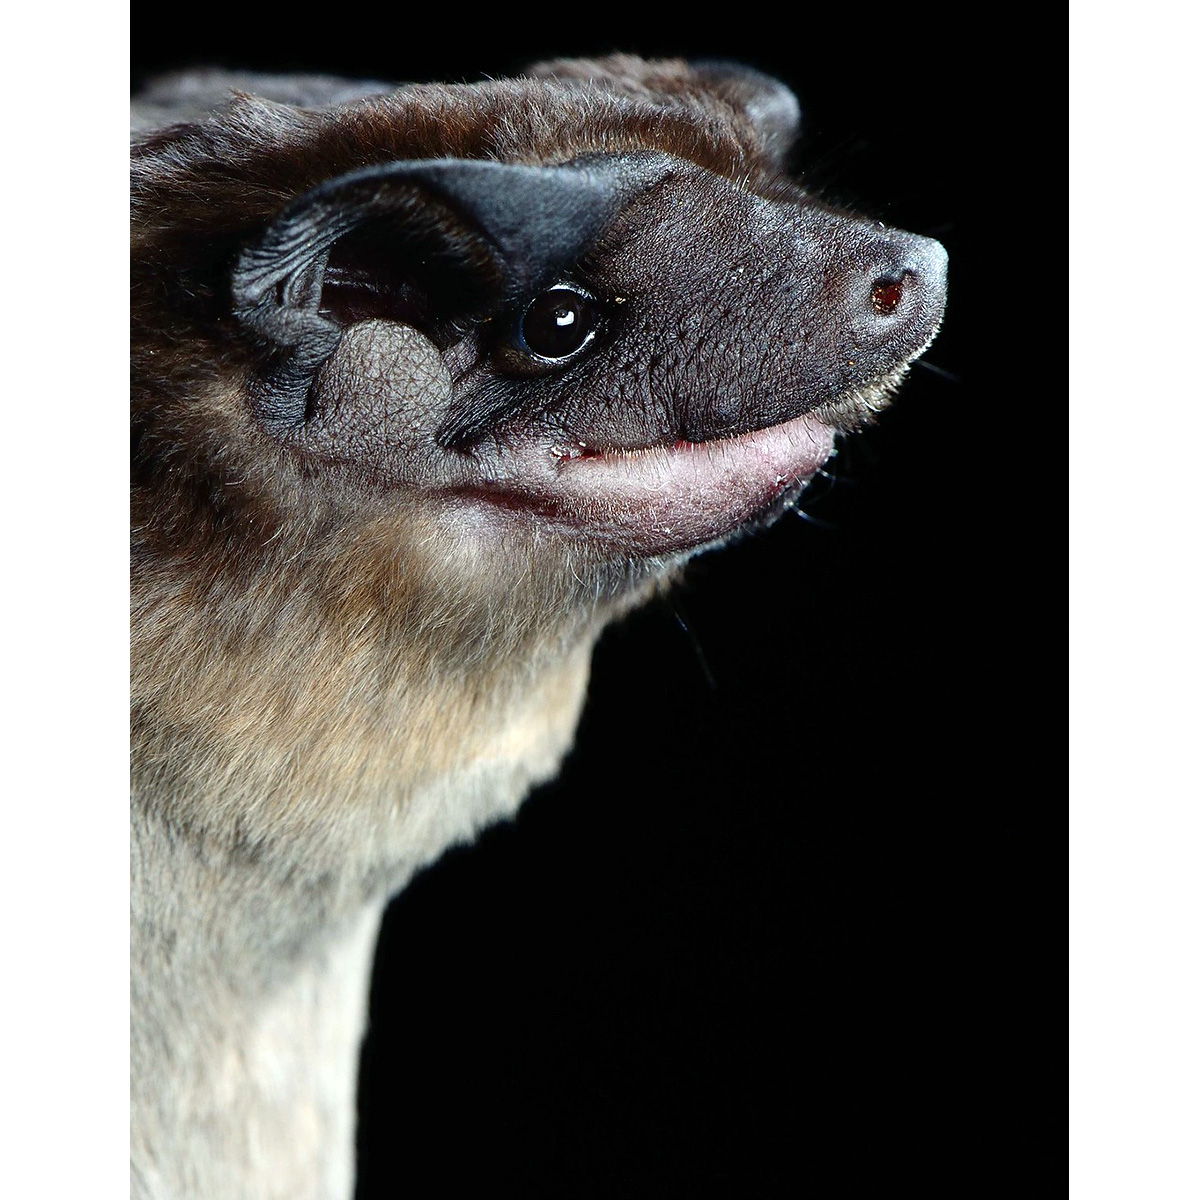 Mexican Dog-Faced Bat (Cynomops mexicanus) Фото №10